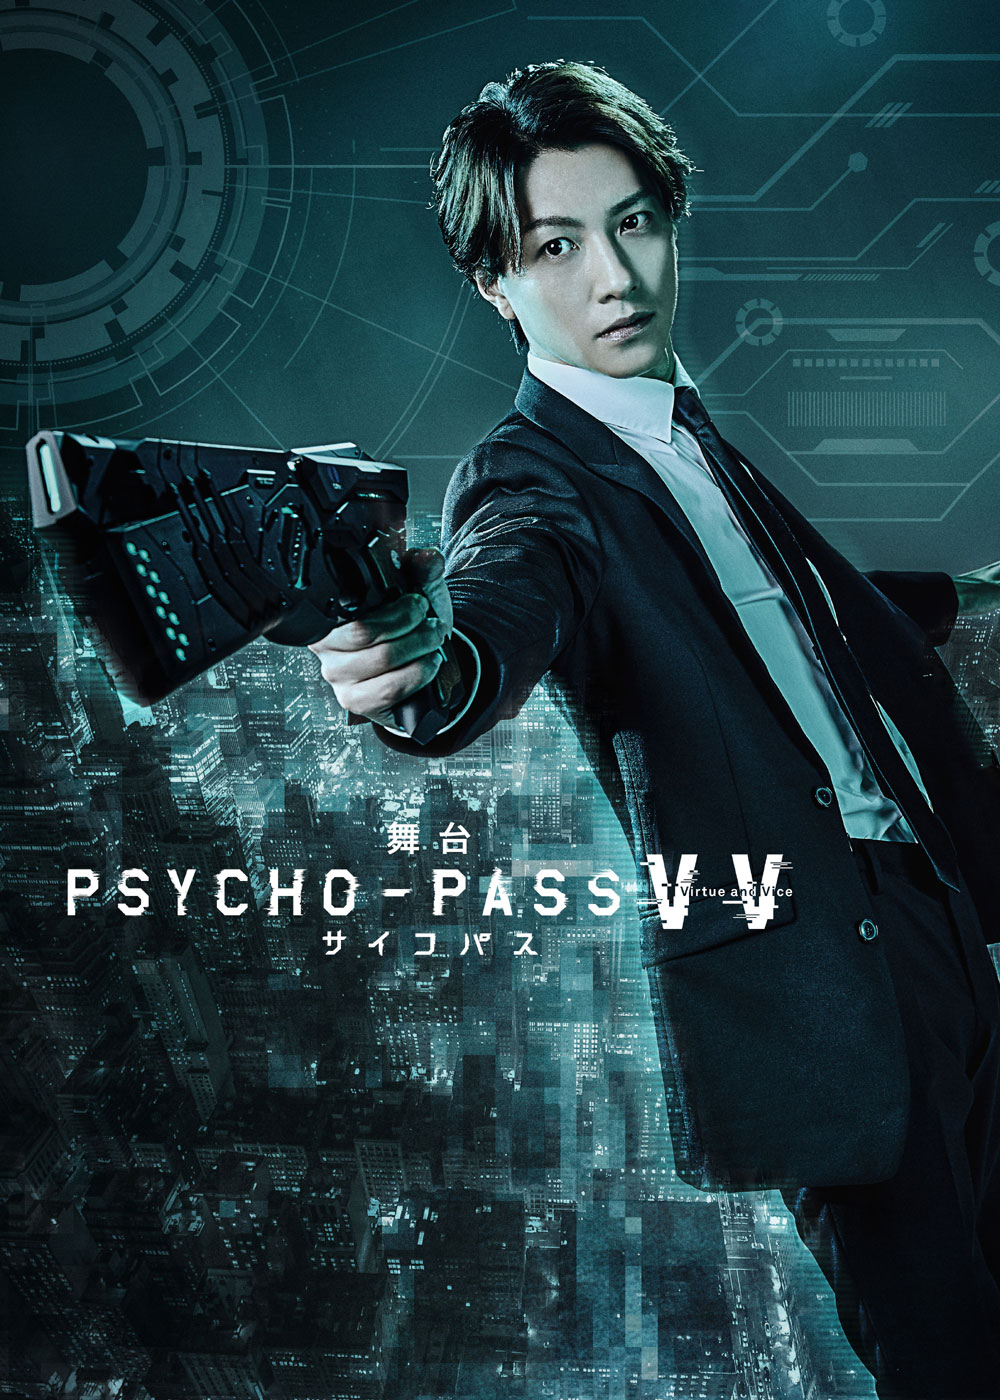 「舞台 PSYCHO-PASS サイコパス Virtue and Vice」 DVD